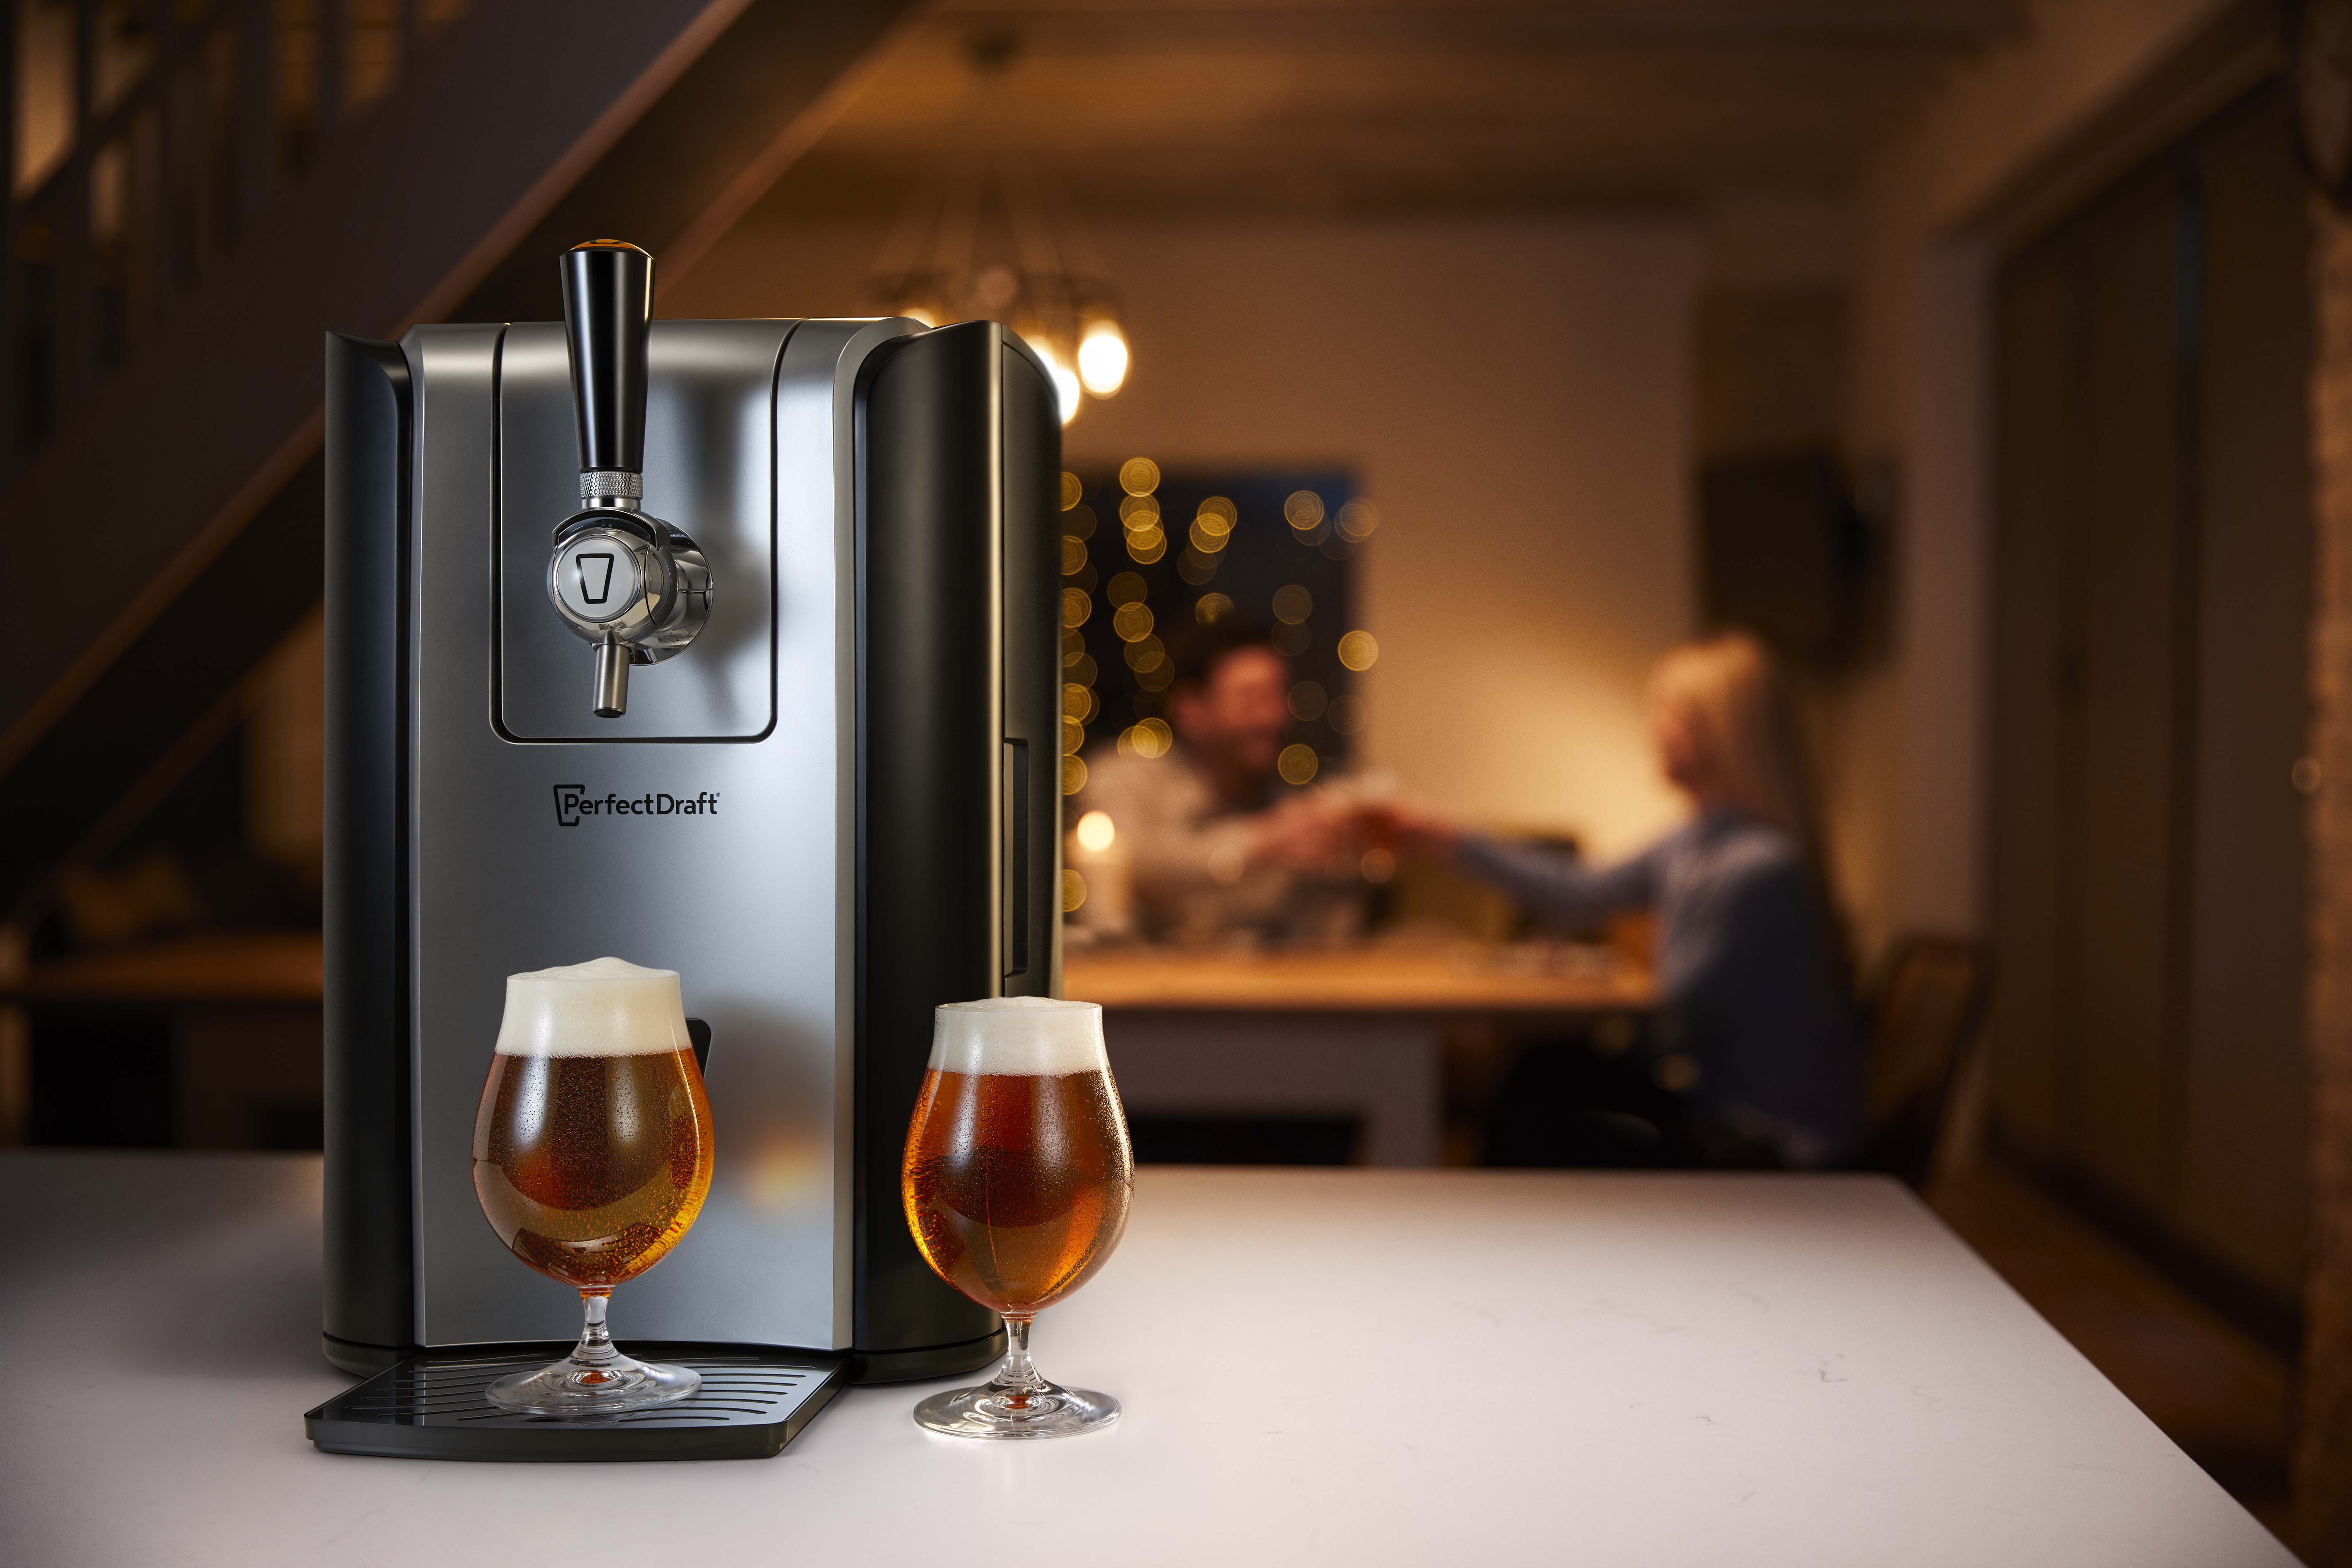 Bières : La machine Perfect Draft en promotion chez Chronodrive